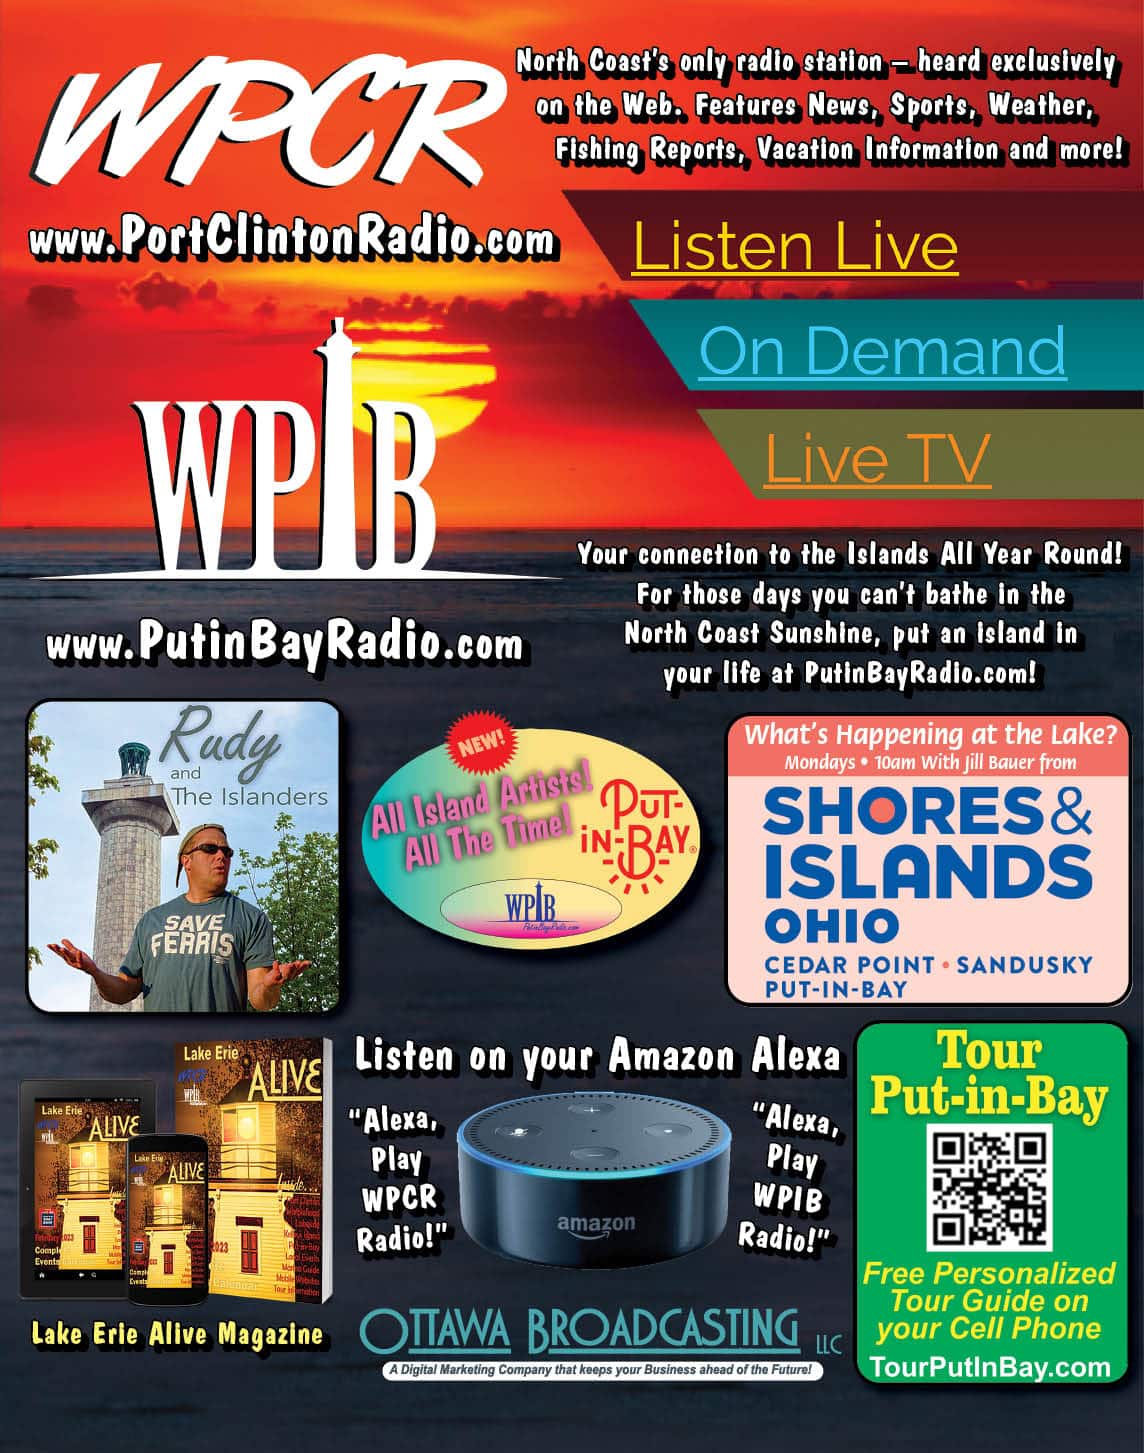 WPCR Radio